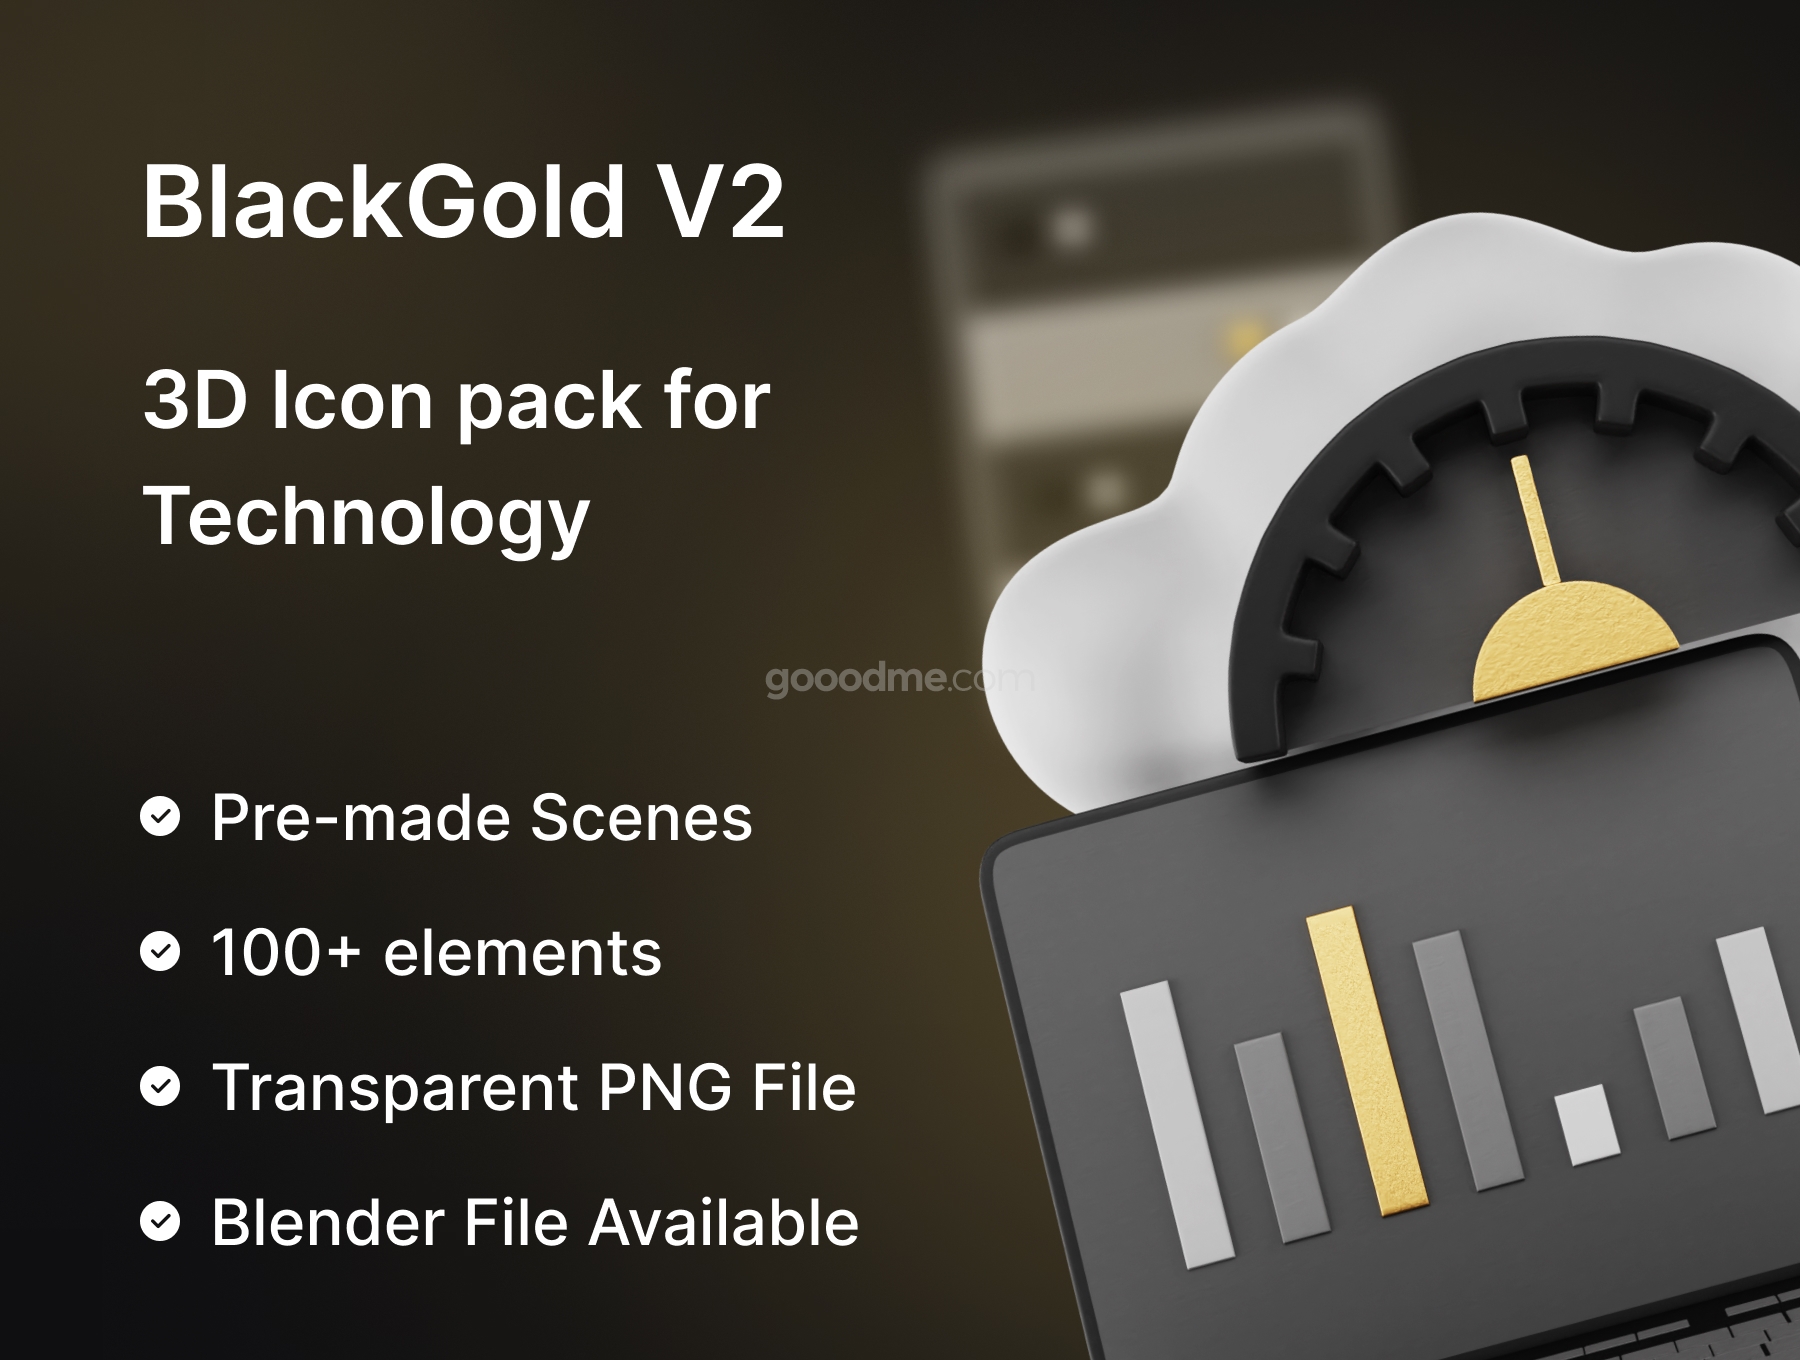 黑金办公系列3D图标素材BlackGold Vol2 – Technology 3D Icon Pack